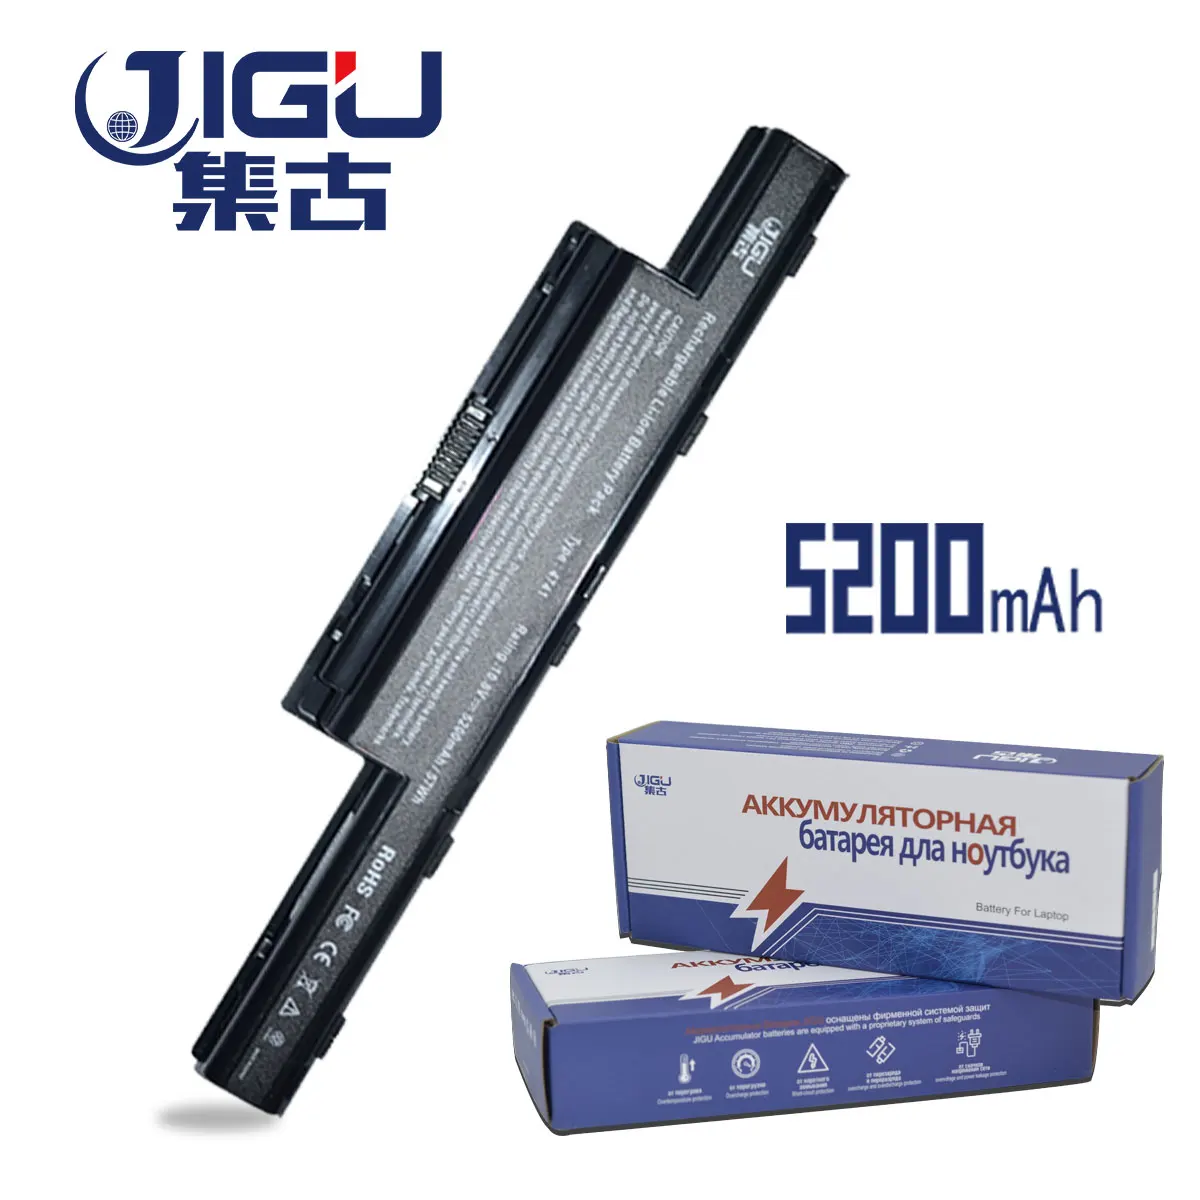 JIGU Аккумулятор для ноутбука Acer Aspire V3 5741 5742 5750 5551G 5560G 5741G 5750G AS10D31 AS10D51 AS10D61 AS10D71 AS10D75 AS10D81